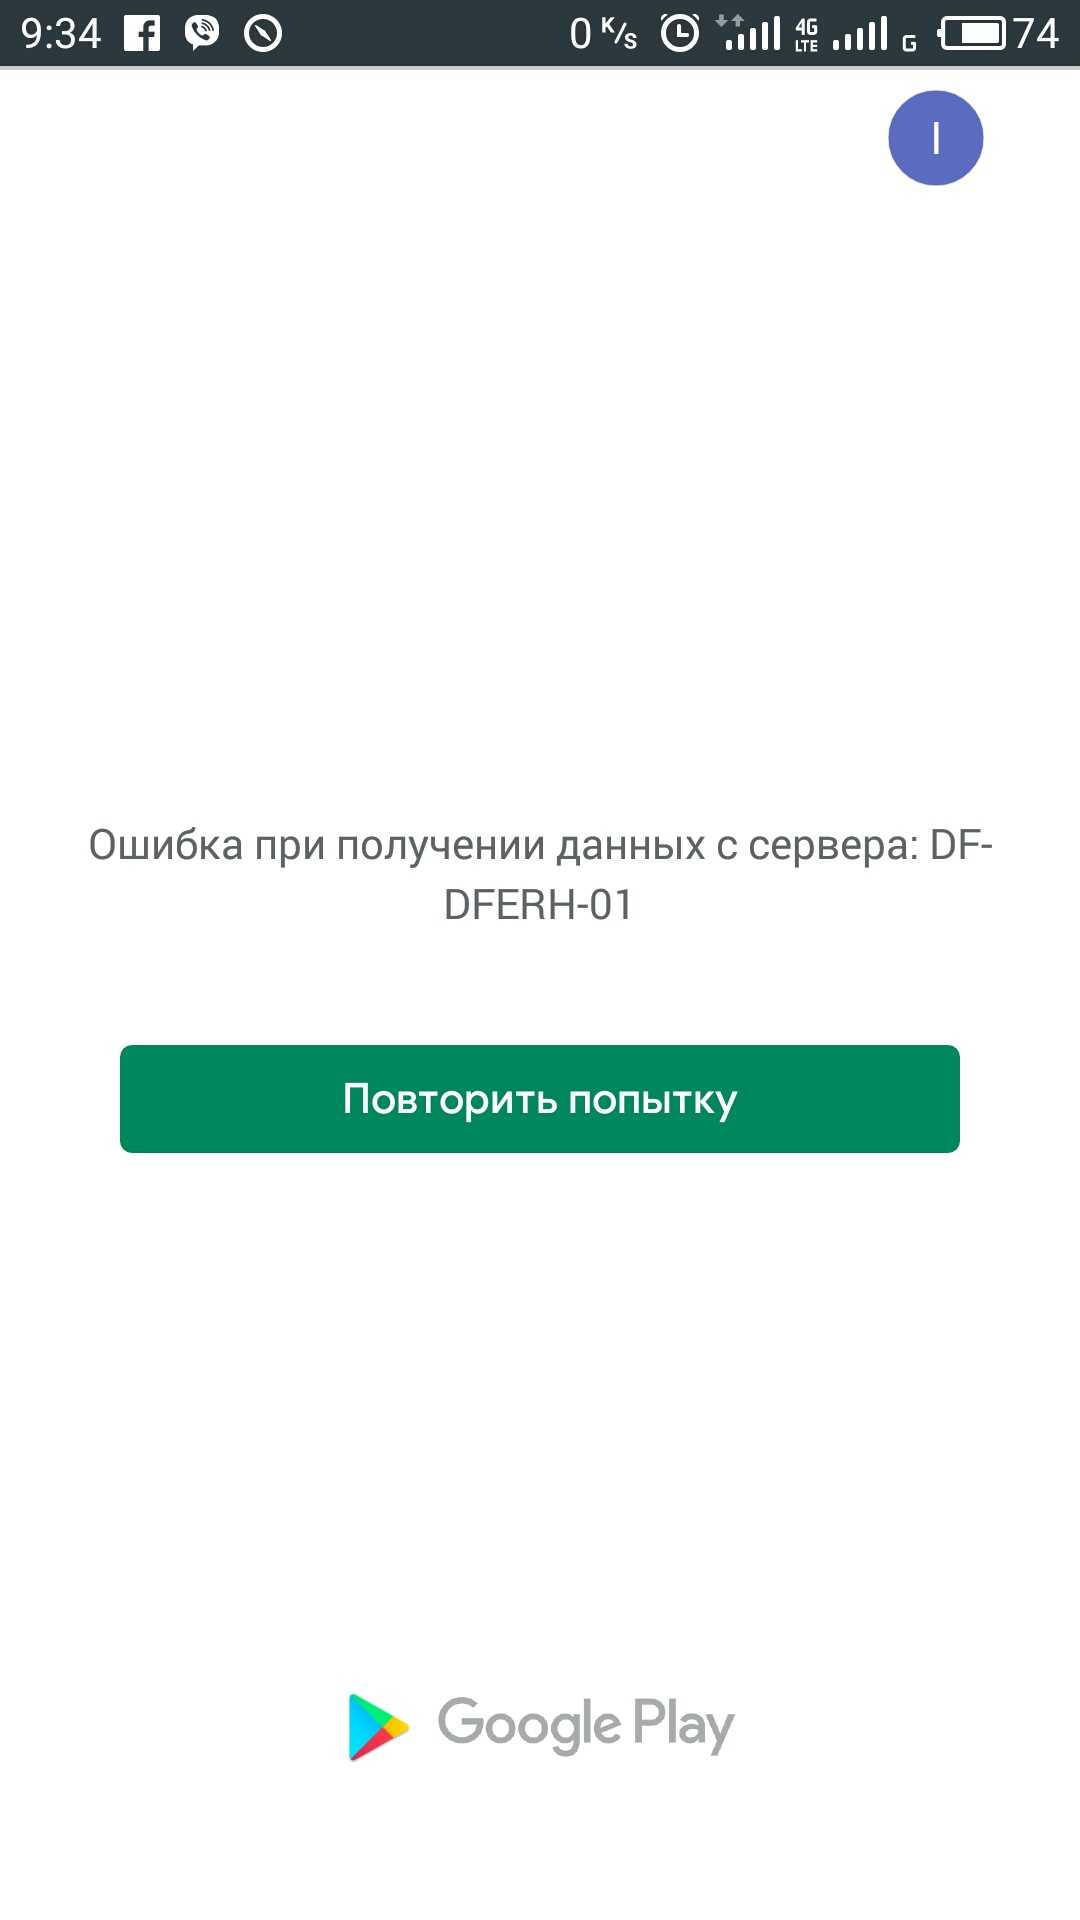 Ошибка при получении данных с сервера df-dferh-01 в google play market. как исправить?